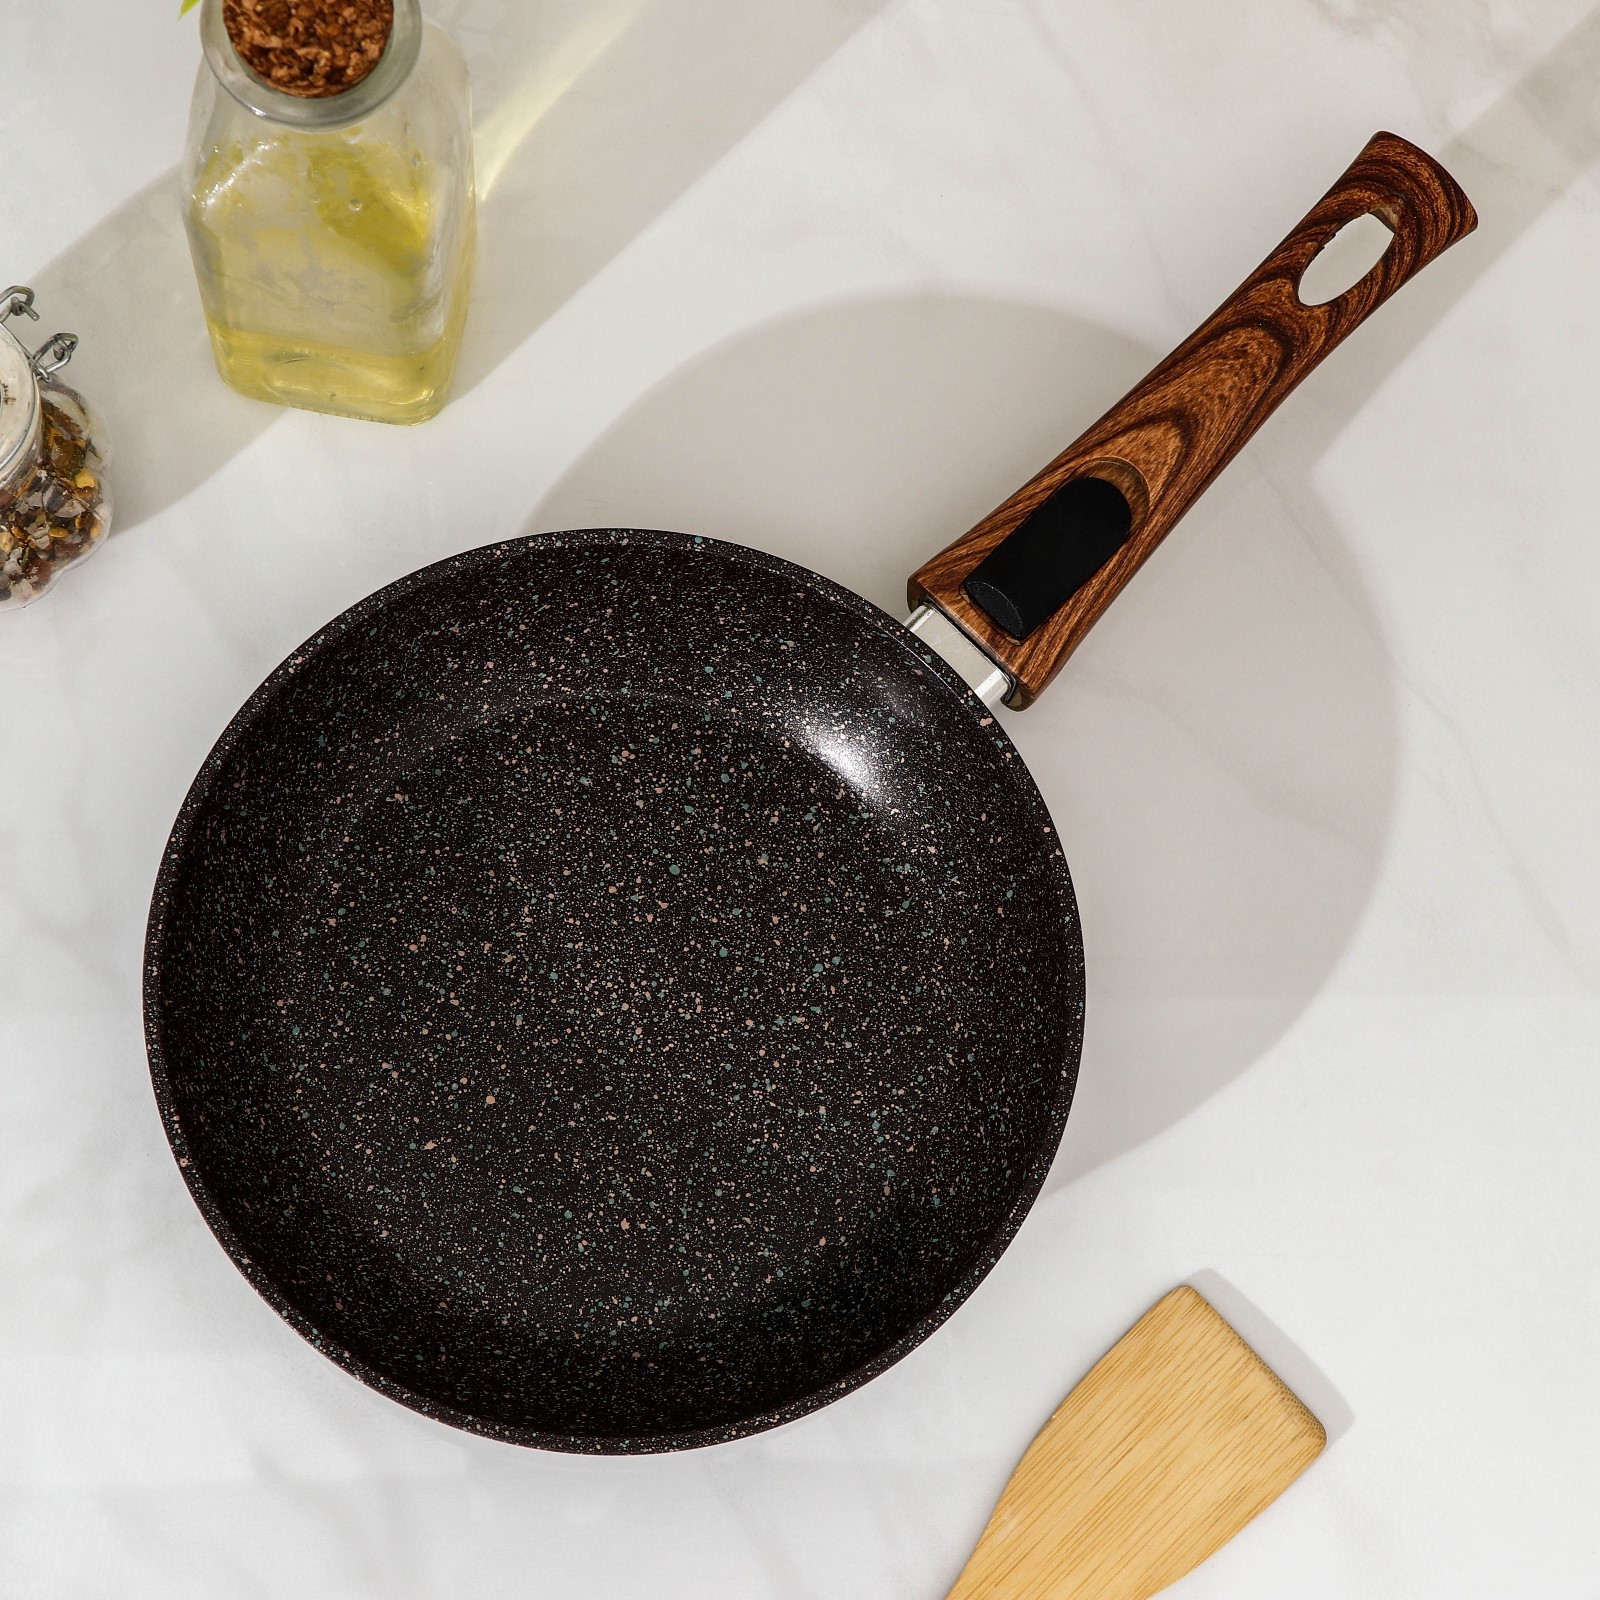 Сковорода Granit цвет: черный (37х20х5 см), размер 37х20х5 см sil907983 Сковорода Granit цвет: черный (37х20х5 см) - фото 1